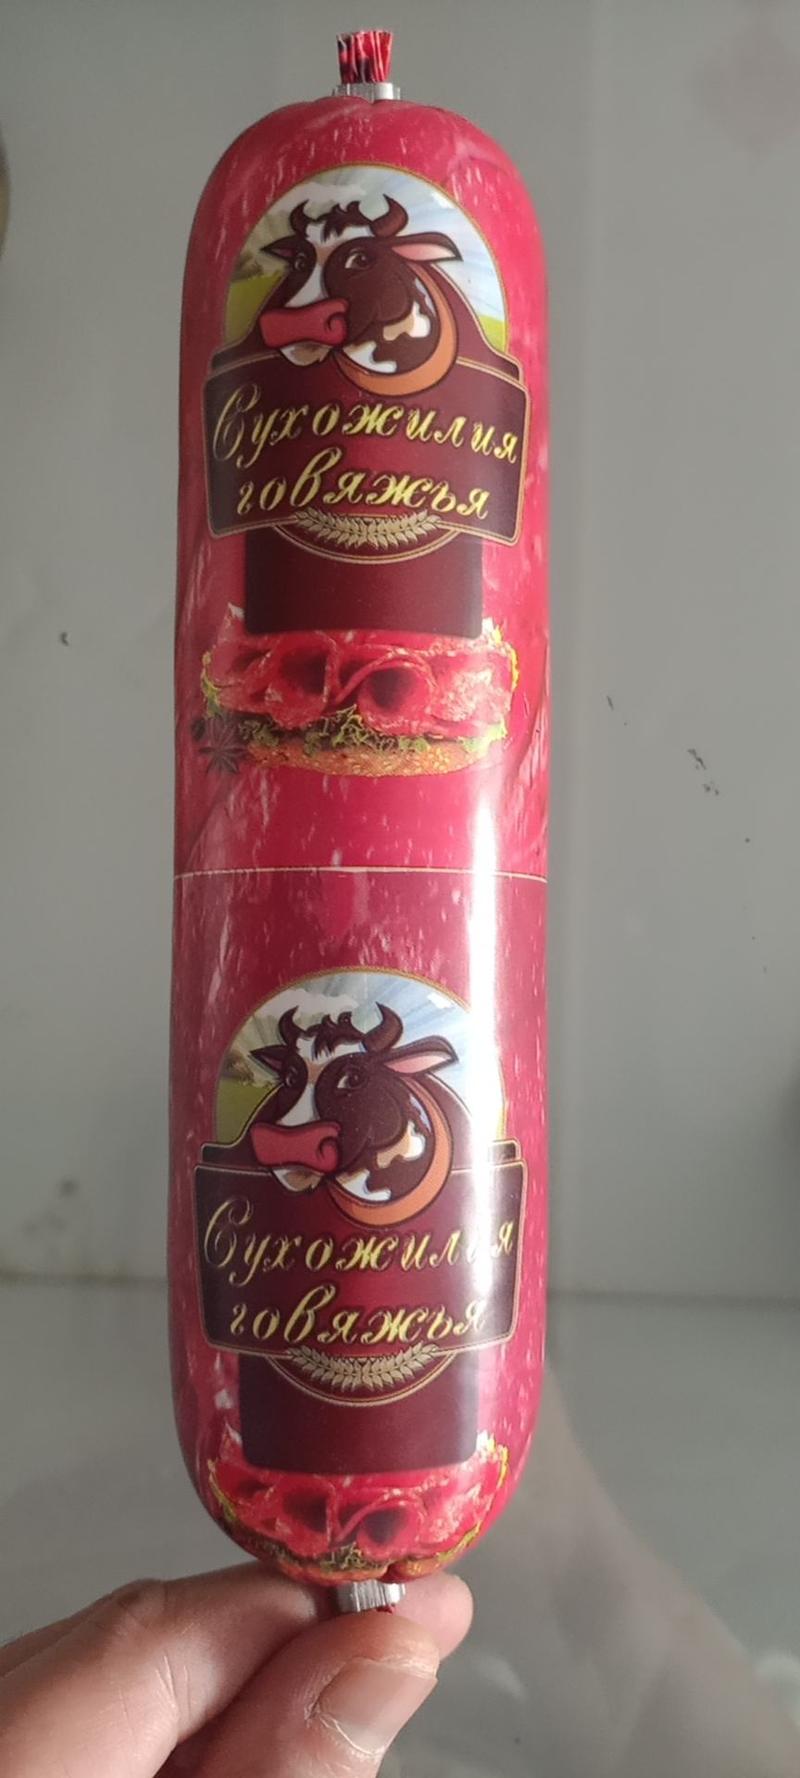 俄罗斯风味卢布肠，打开满满的肉清晰可见。